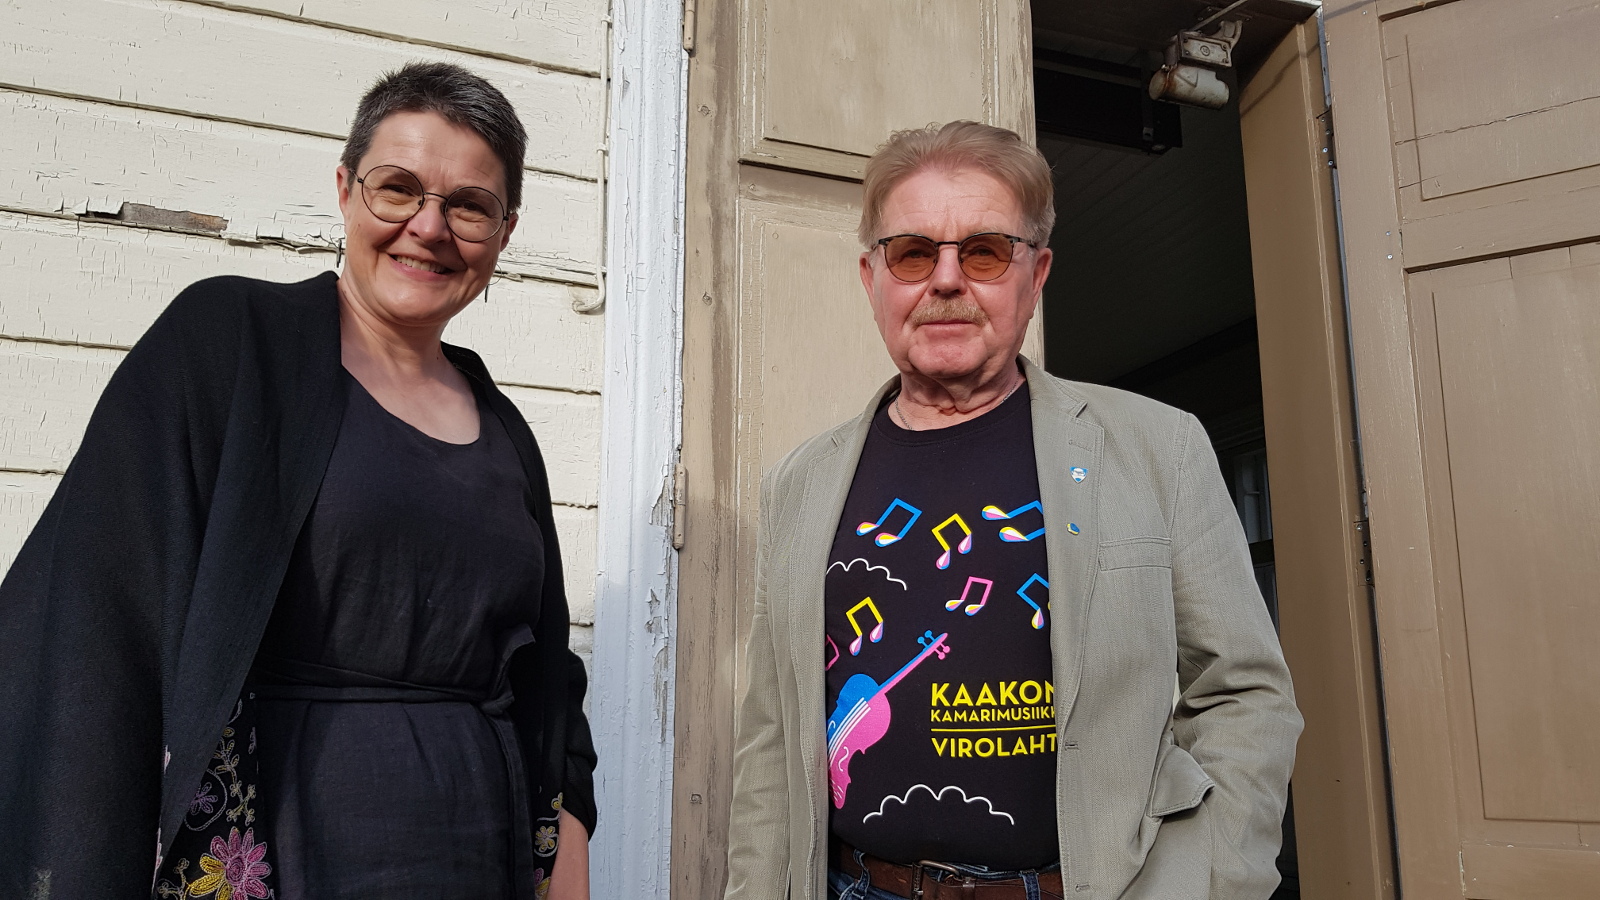 Kuvassa ovat Siru Ahopelto mustissa vaatteissa ja Risto Kouki kamarimusiikin t-paidassa. Taustalla on Virolahden kirkon vaaleata seinää ja ruskeaa kirkon ovea.